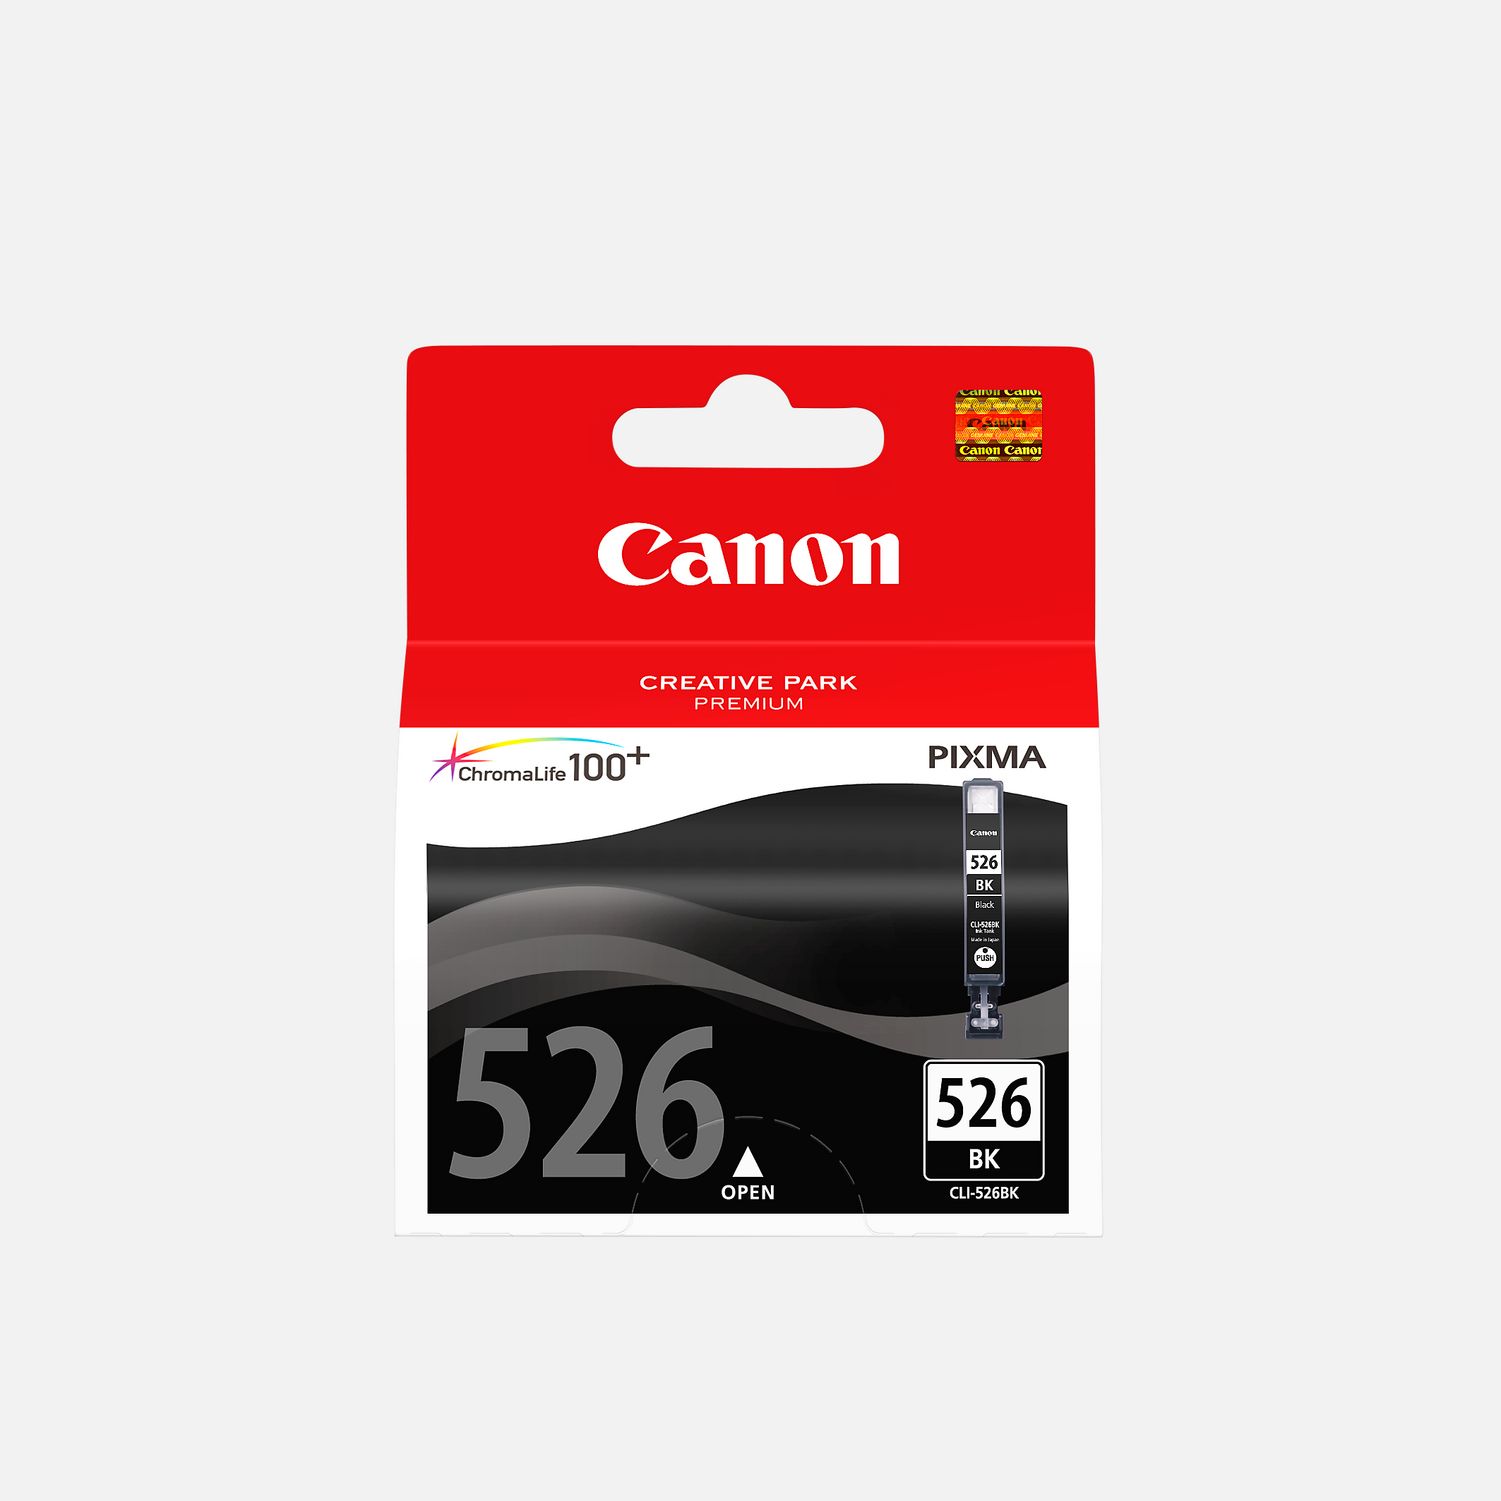 Cartouche d'encre Canon CLI-526 Cyan, Magenta, Jaune Multipack au meilleur  prix